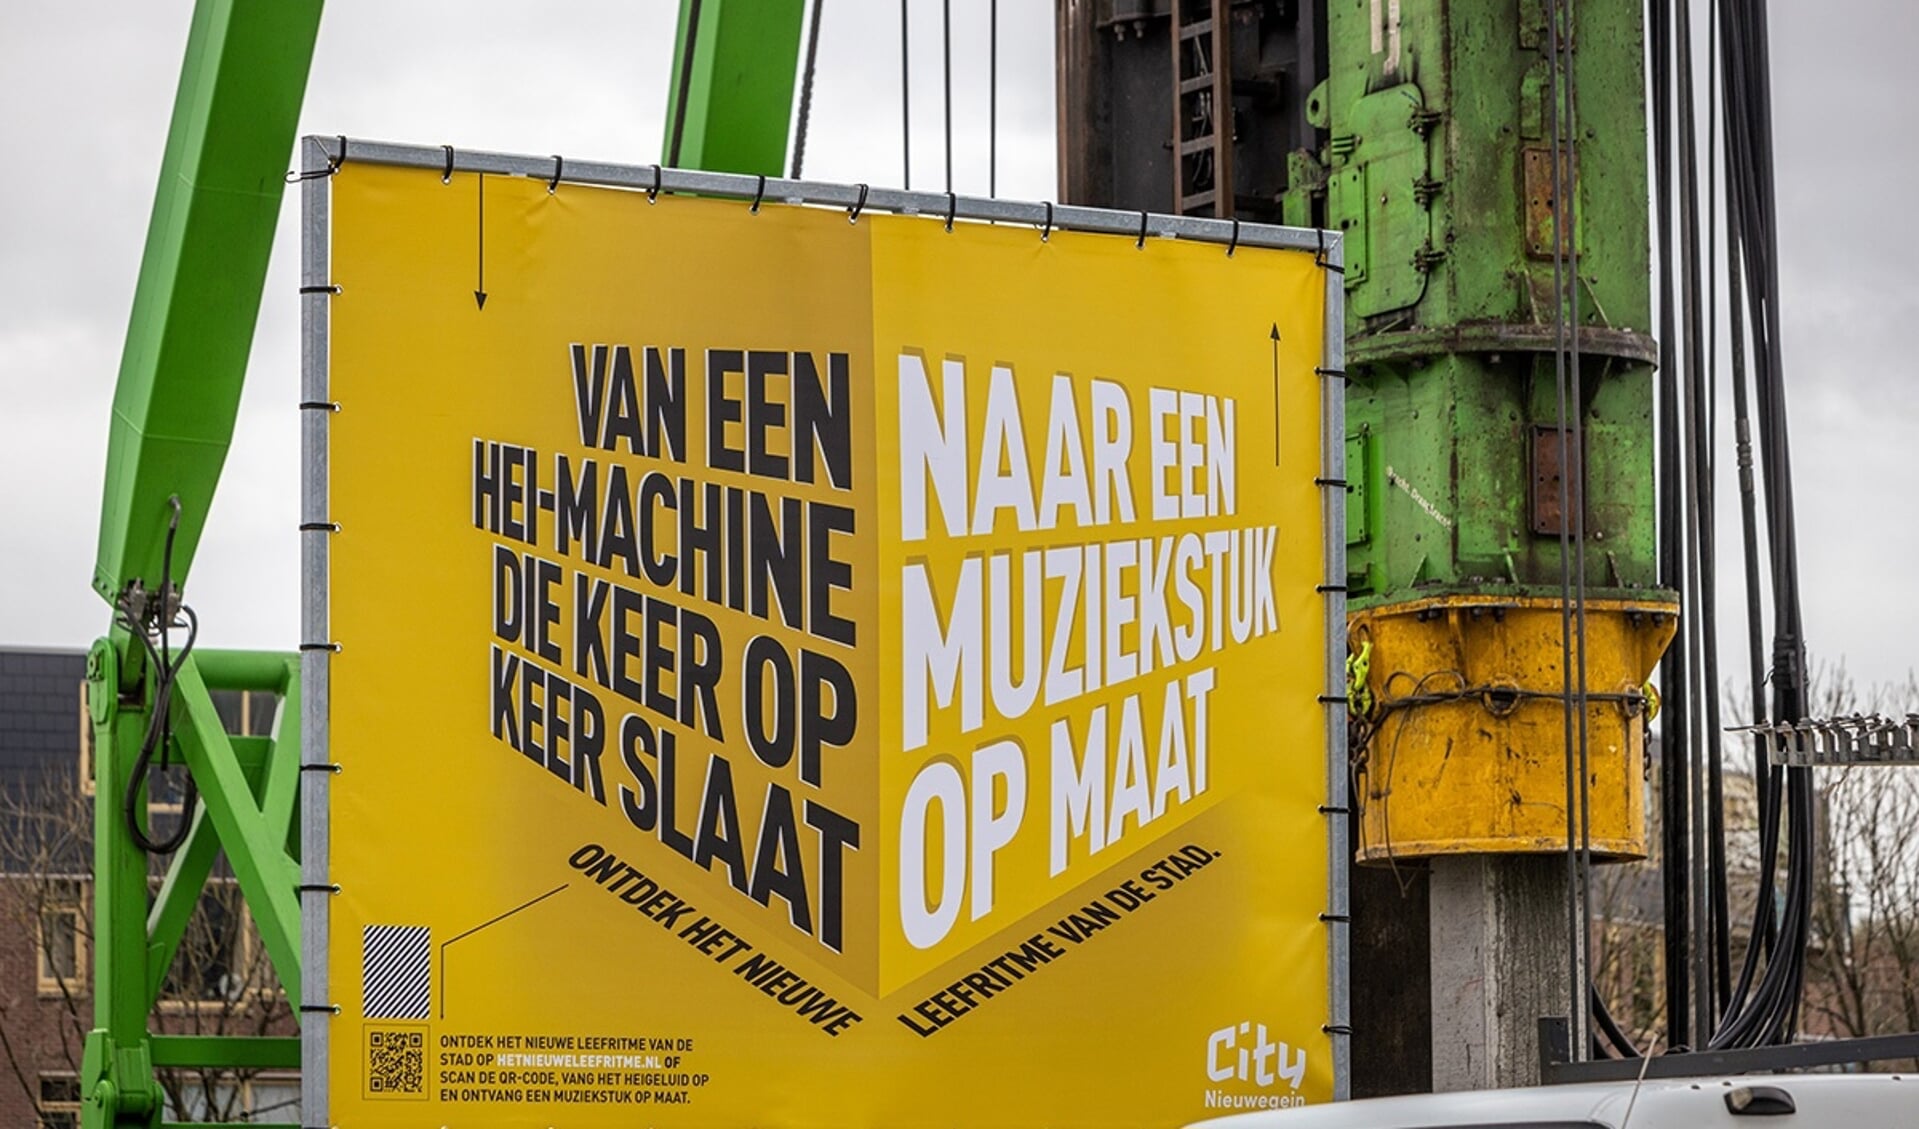 Bord met ludieke tekst bij de heimachines in City Nieuwegein.